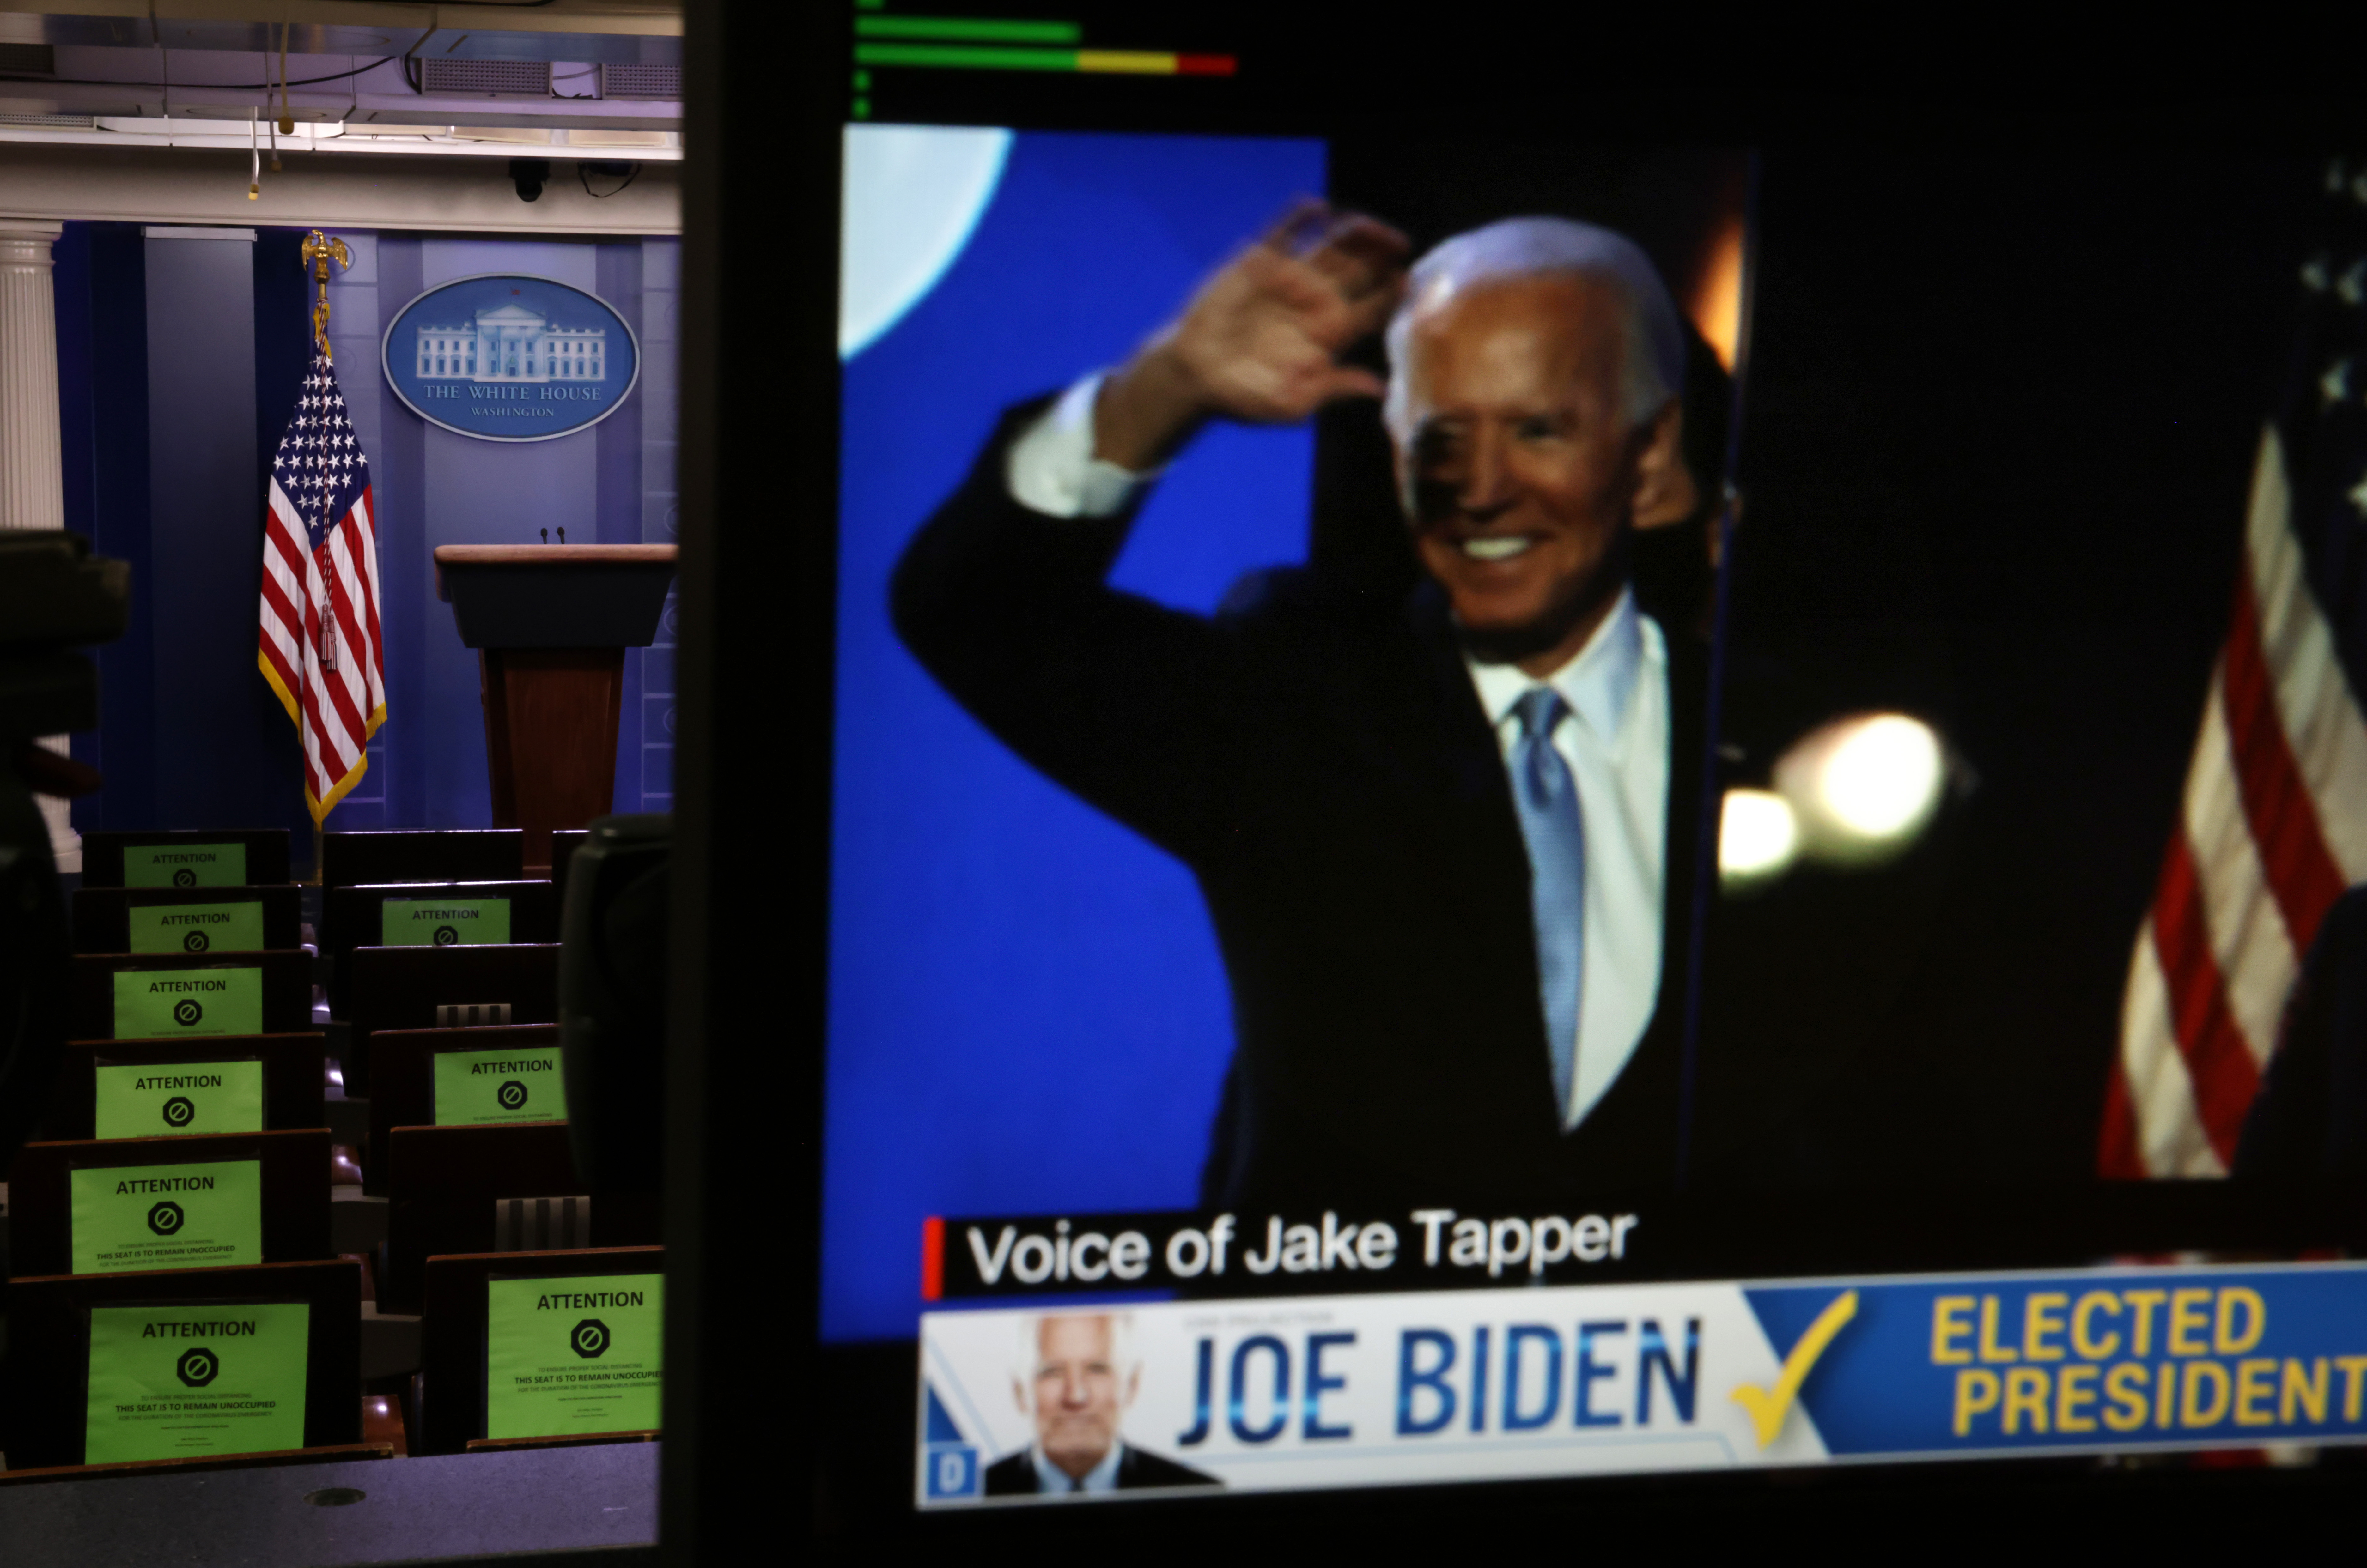 Joe Biden wins US election - 2020 Timeline